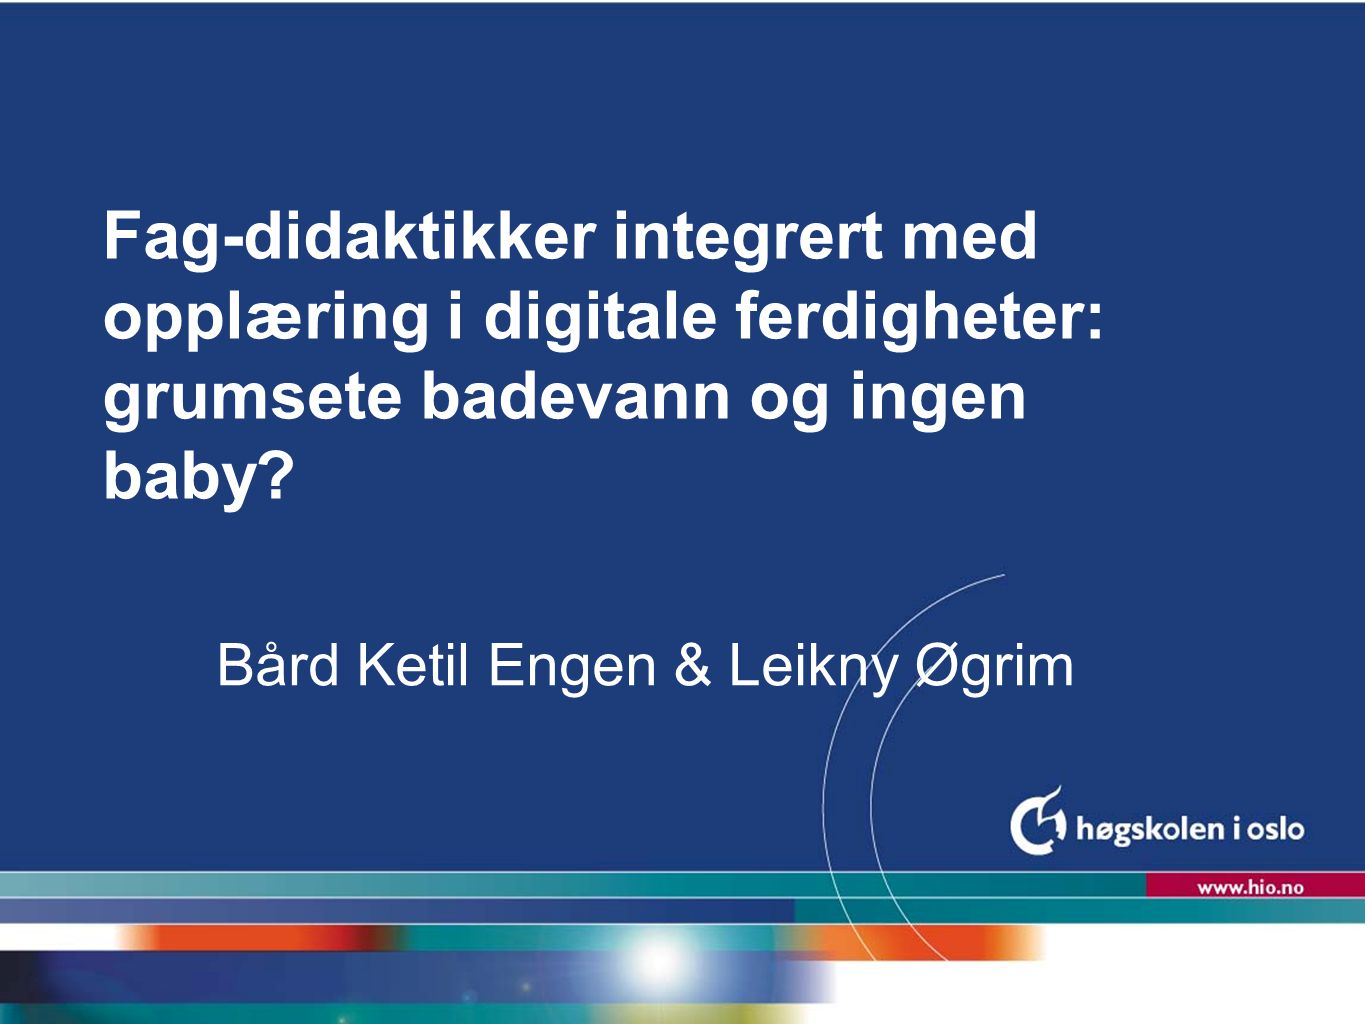 Bård Ketil Engen & Leikny Øgrim